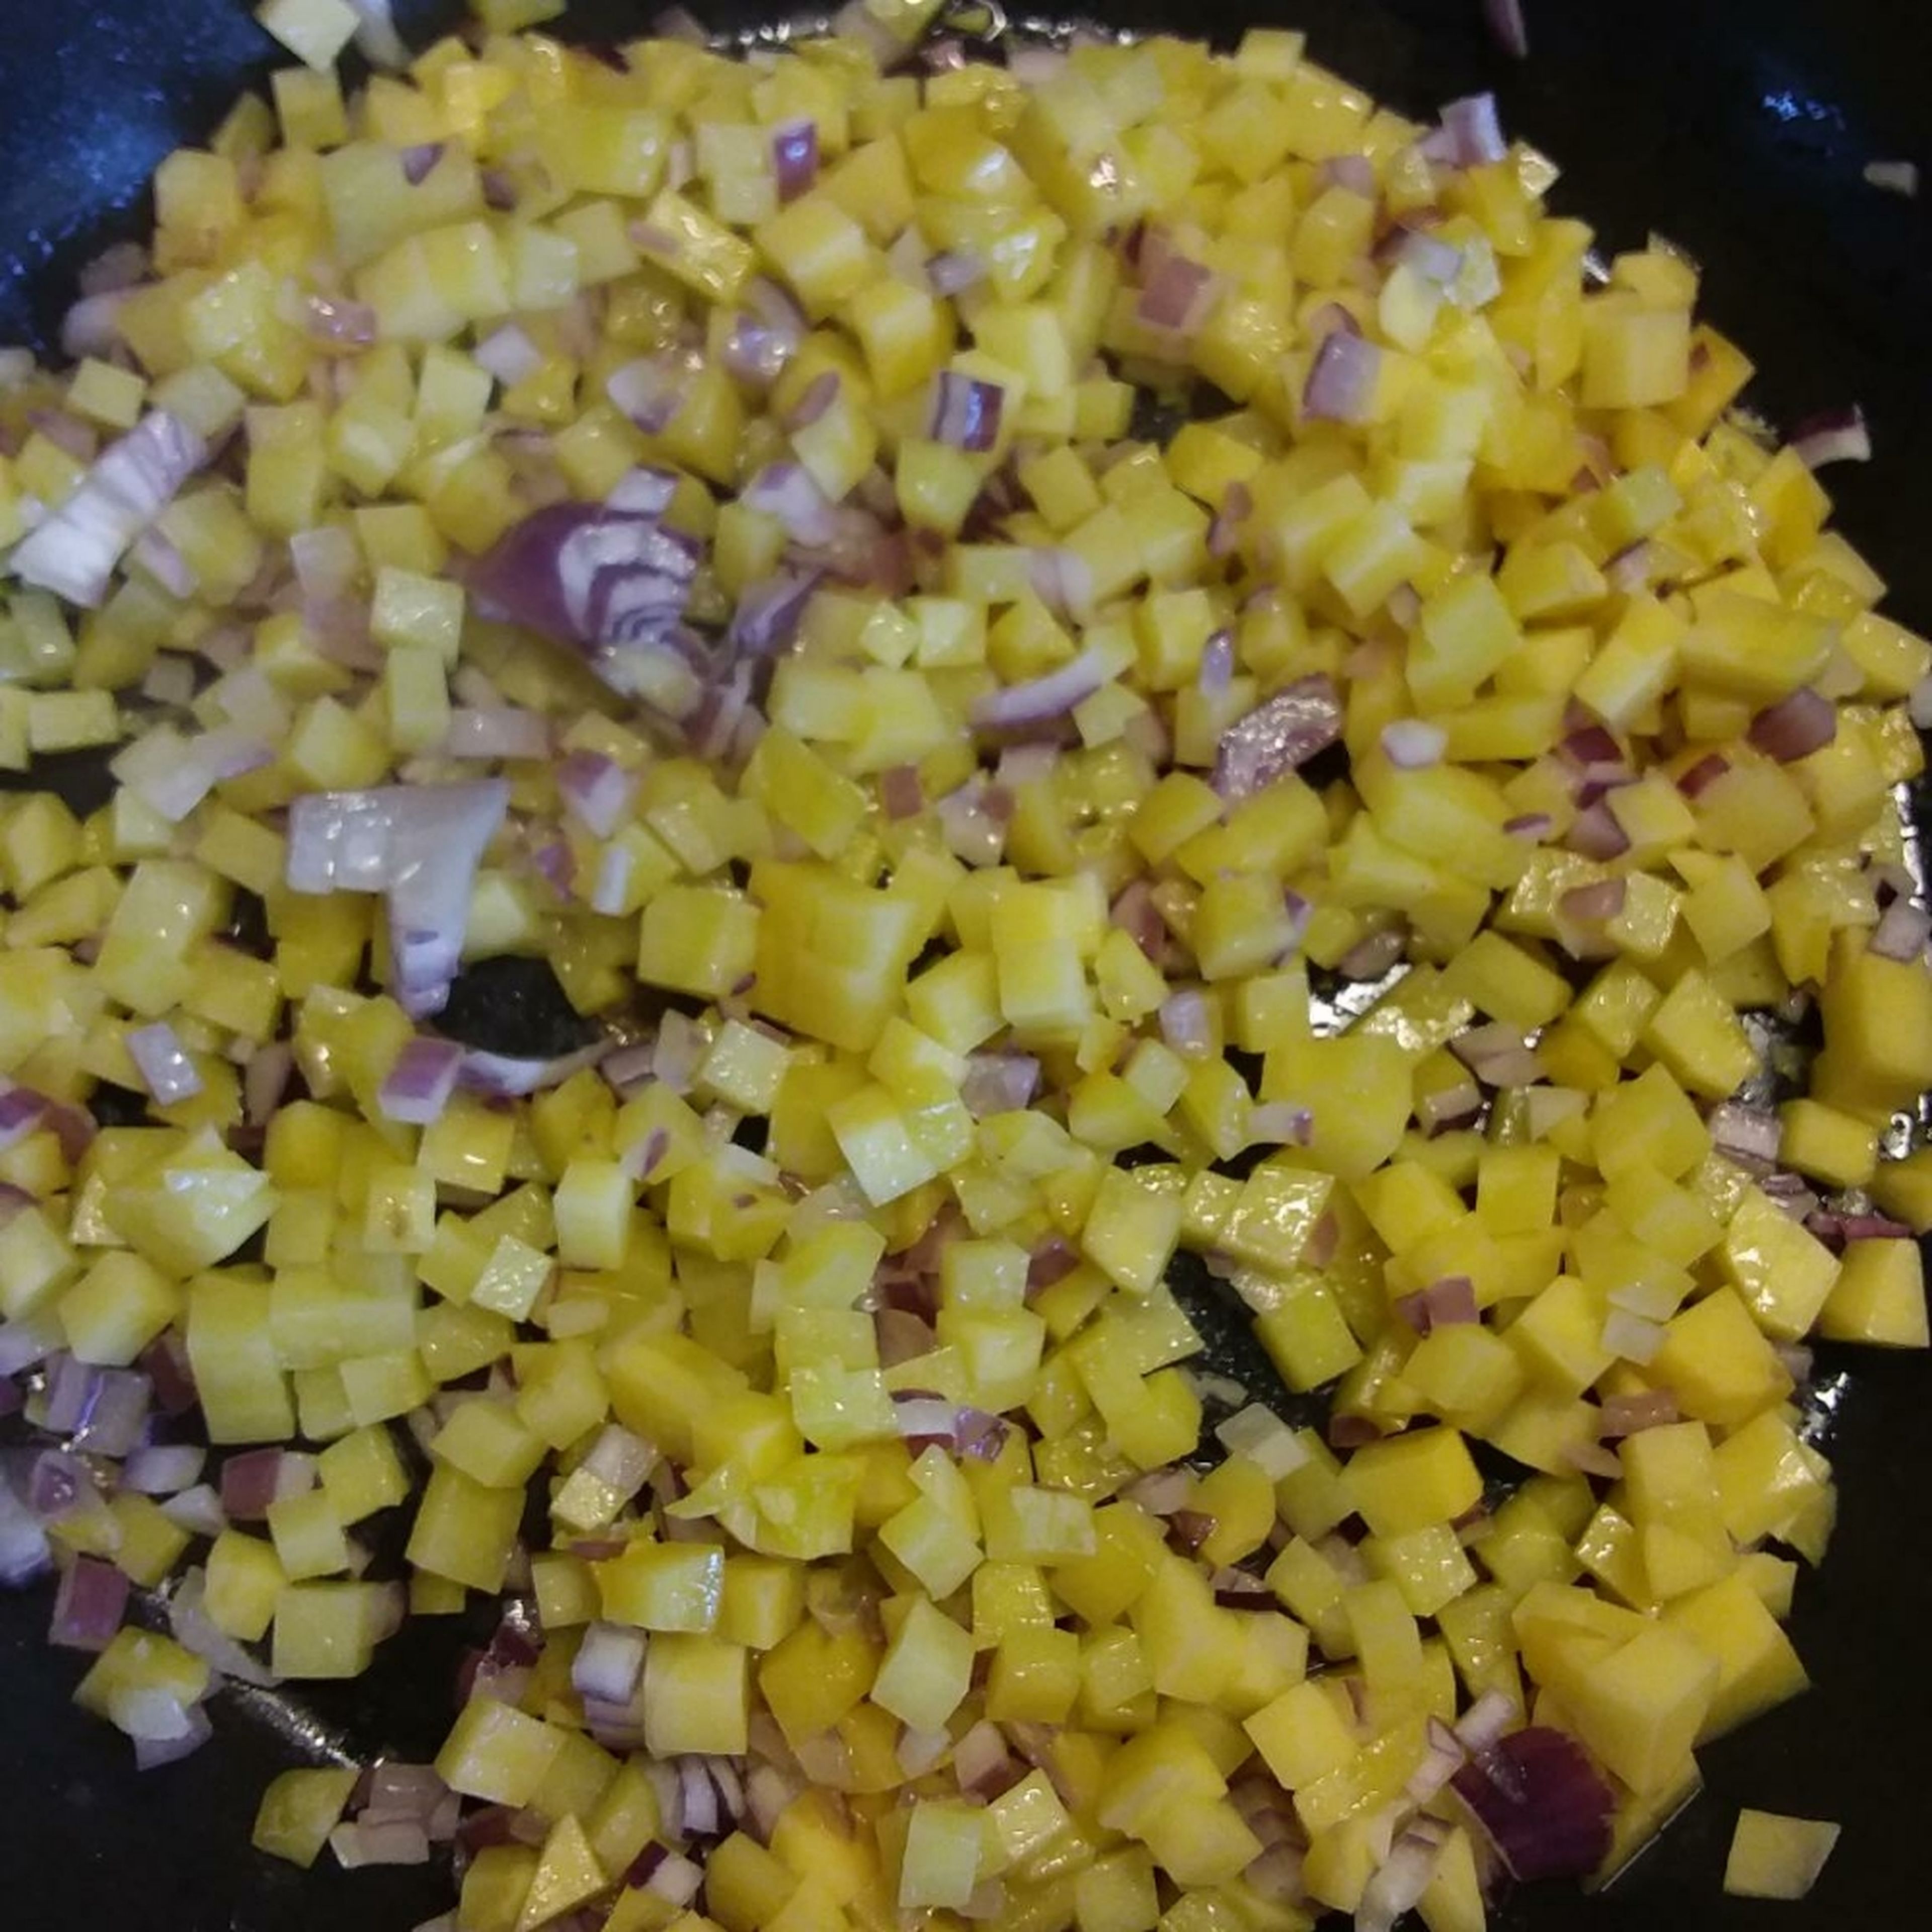 Kartoffel würfeln und mit der gewürfelten Zwiebel in der Pfanne mit wenig Öl braten, bissfest, nicht durchgaren lassen.